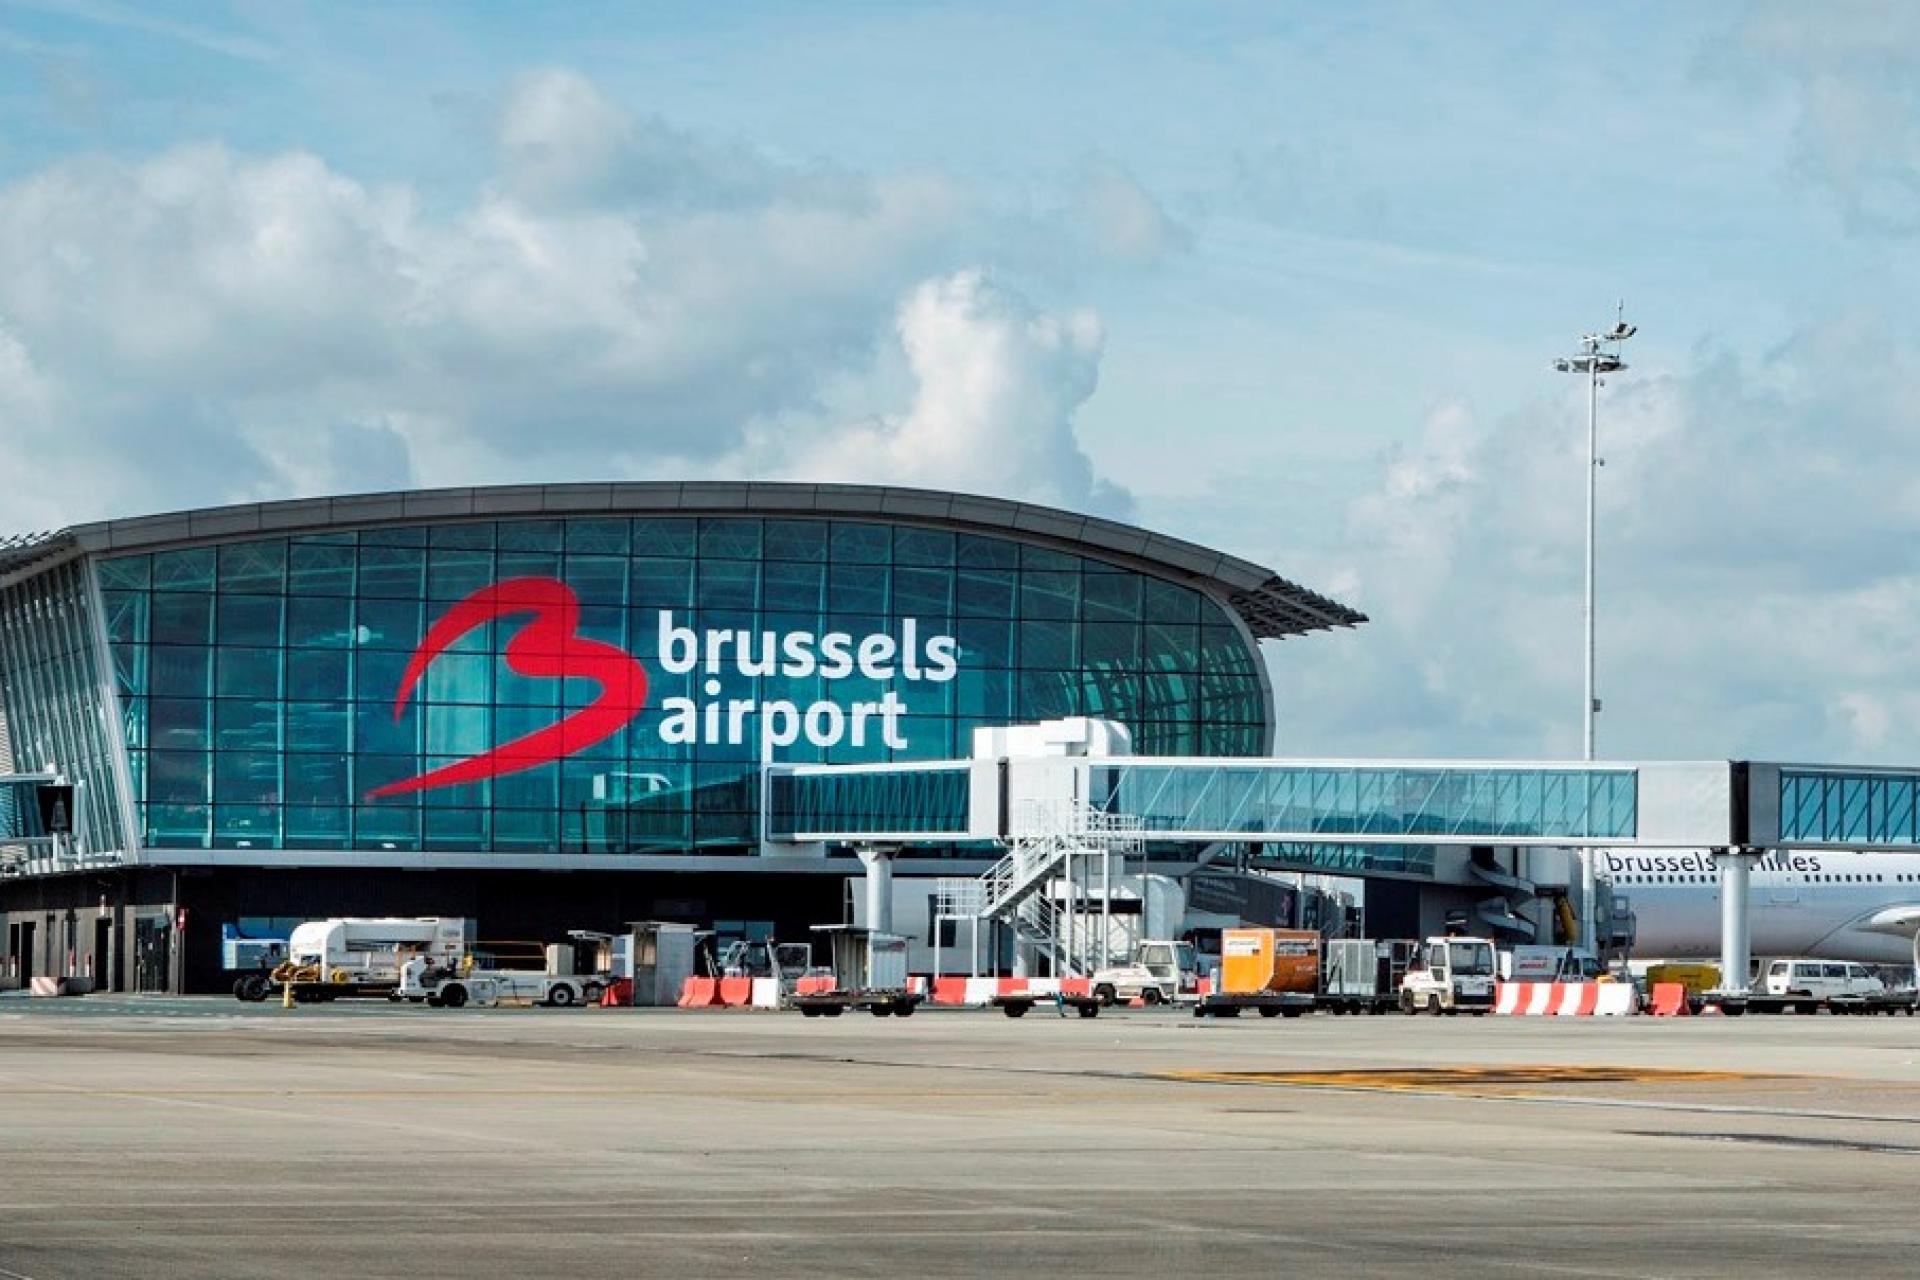 Забастовка грузчиков в аэропорту Брюсселя привела к отмене сотен рейсов 